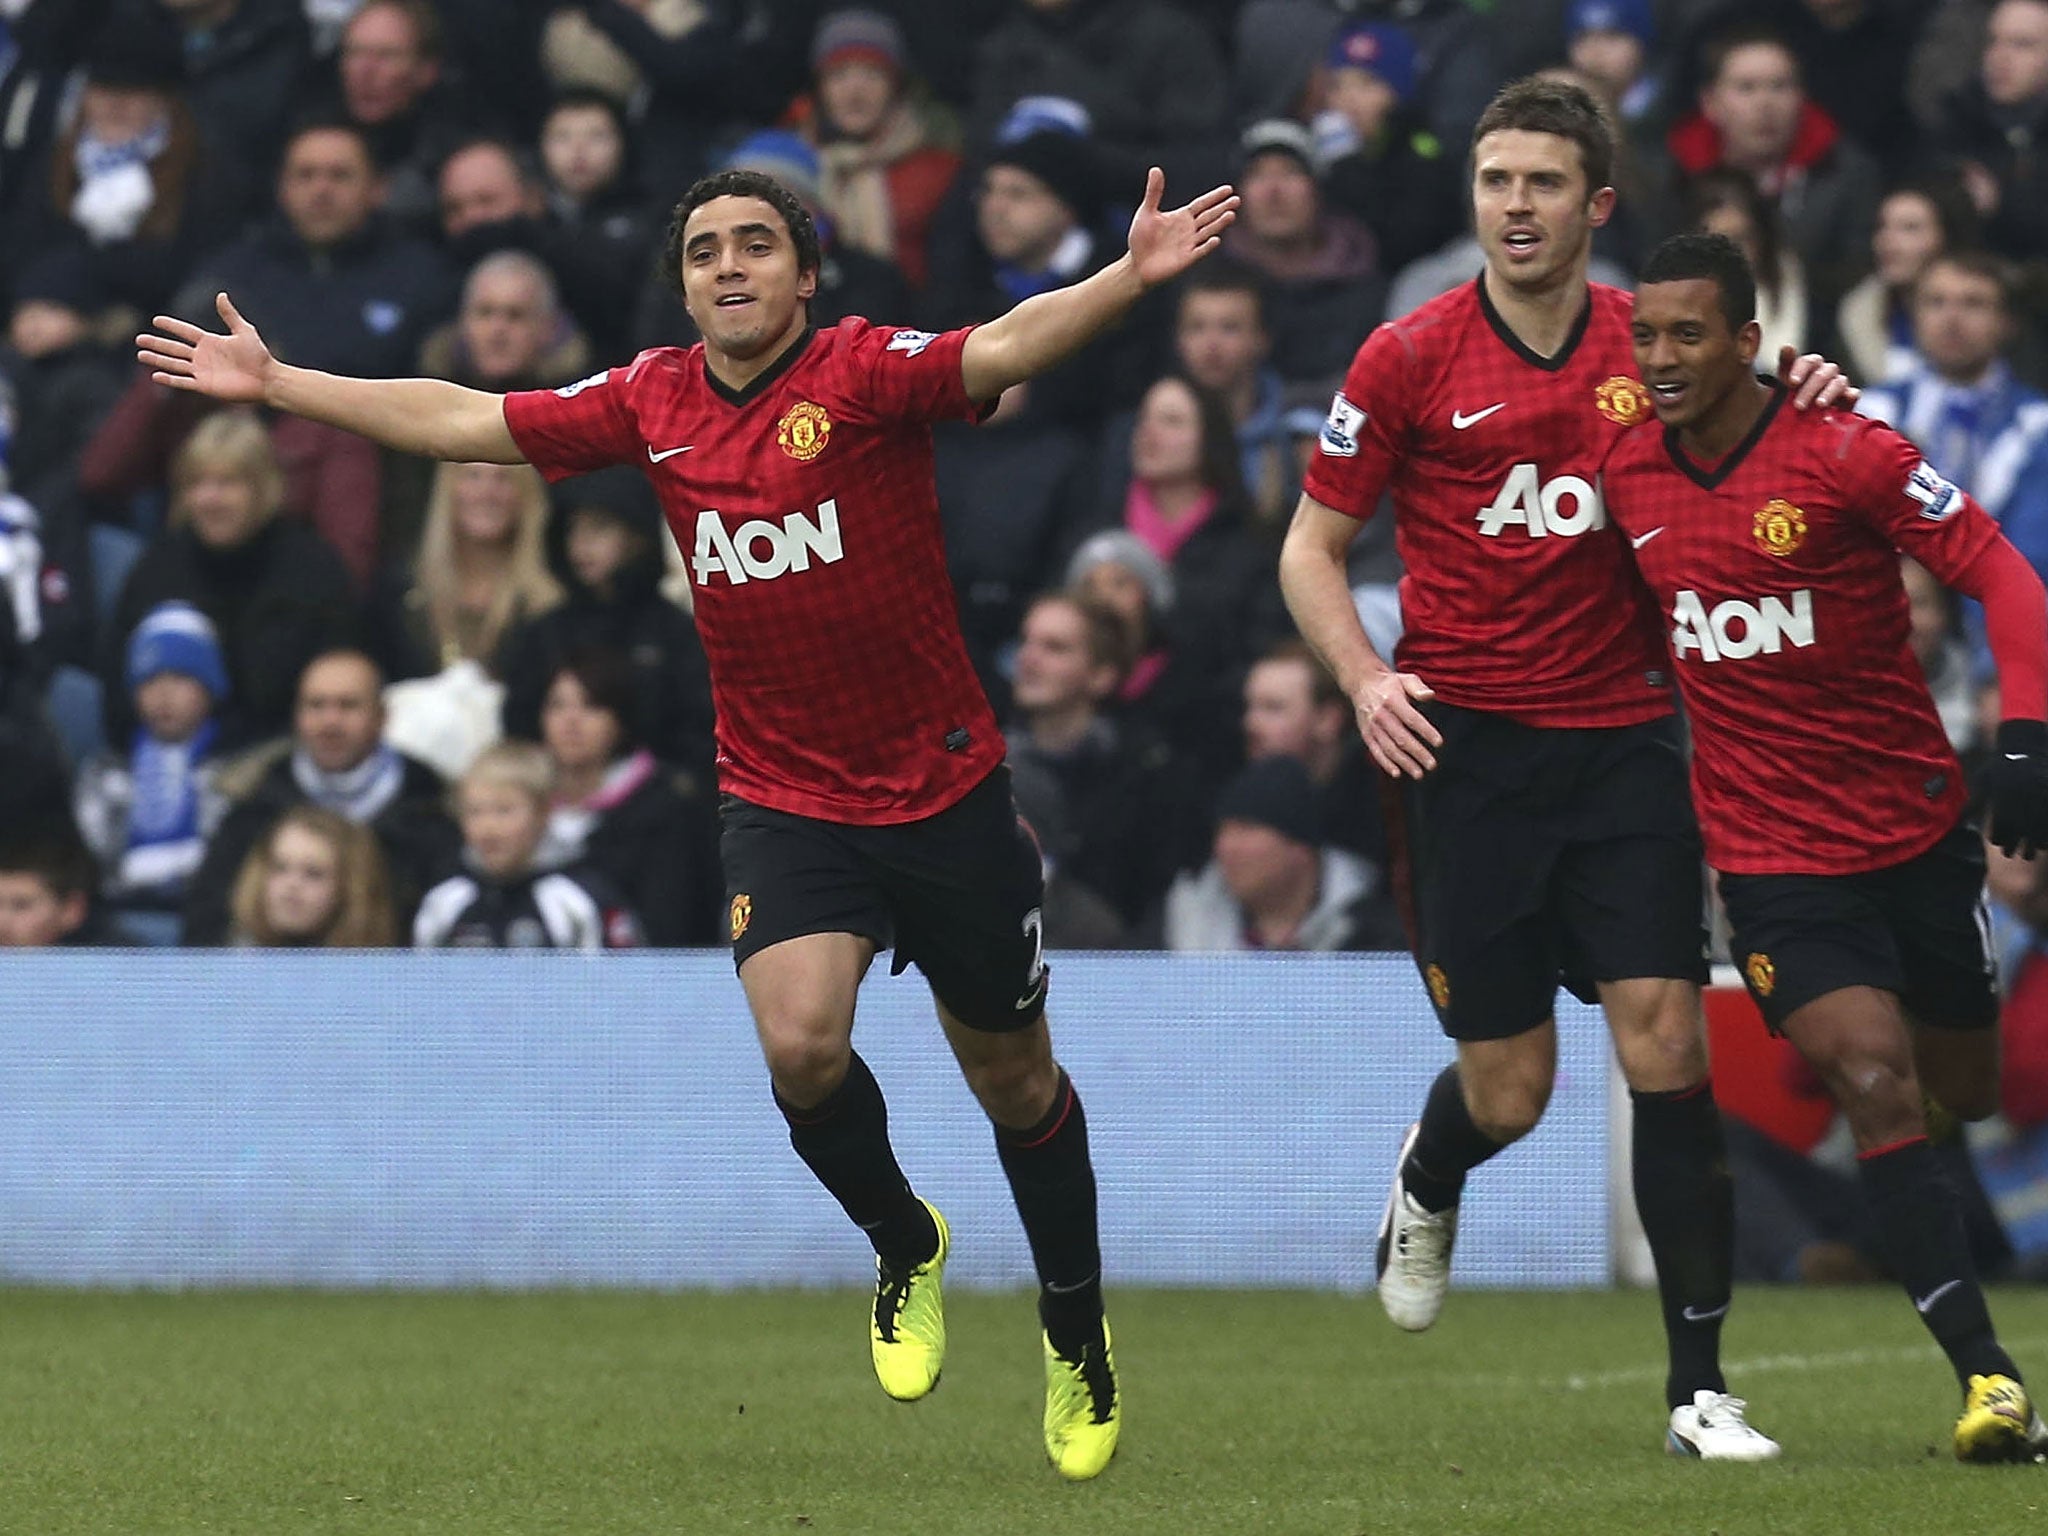 Rafael da Silva's wonder-goal opens the scoring for Manchester United against QPR